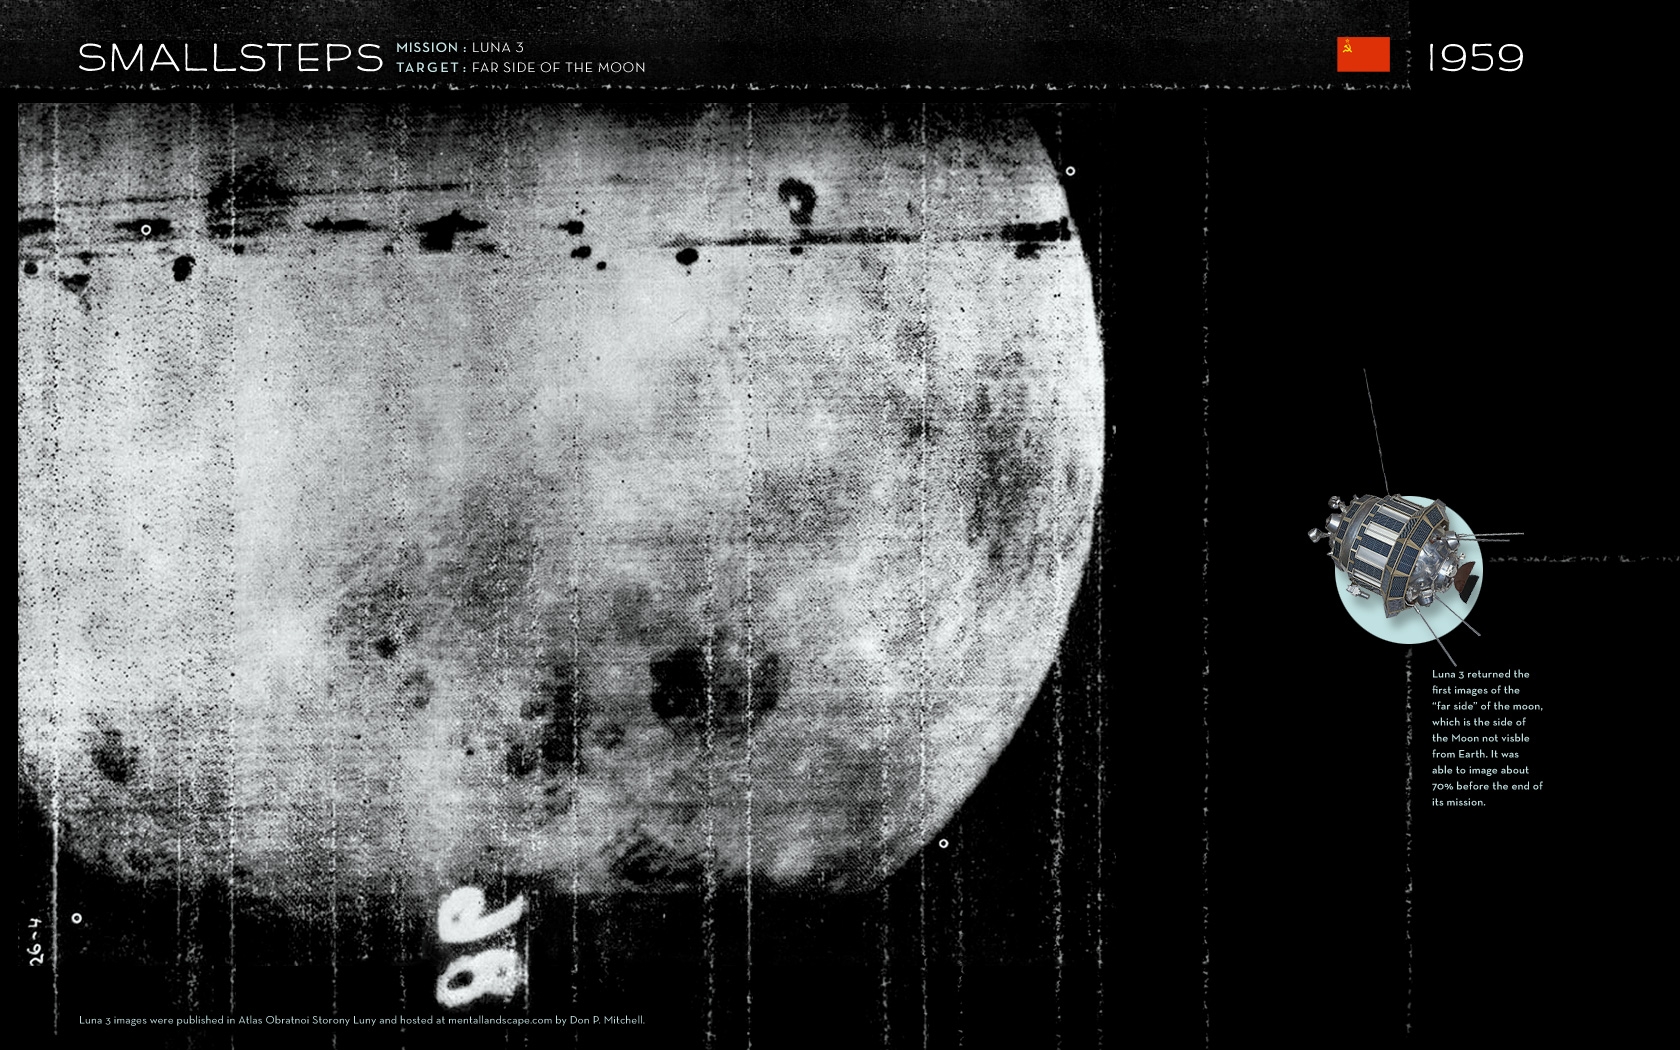 Корабль луна 3. Луна-3 автоматическая межпланетная станция. Снимки автоматической станции "Луна 3". Луна 3 Фотографирование обратной стороны Луны. Луна 3 1959.